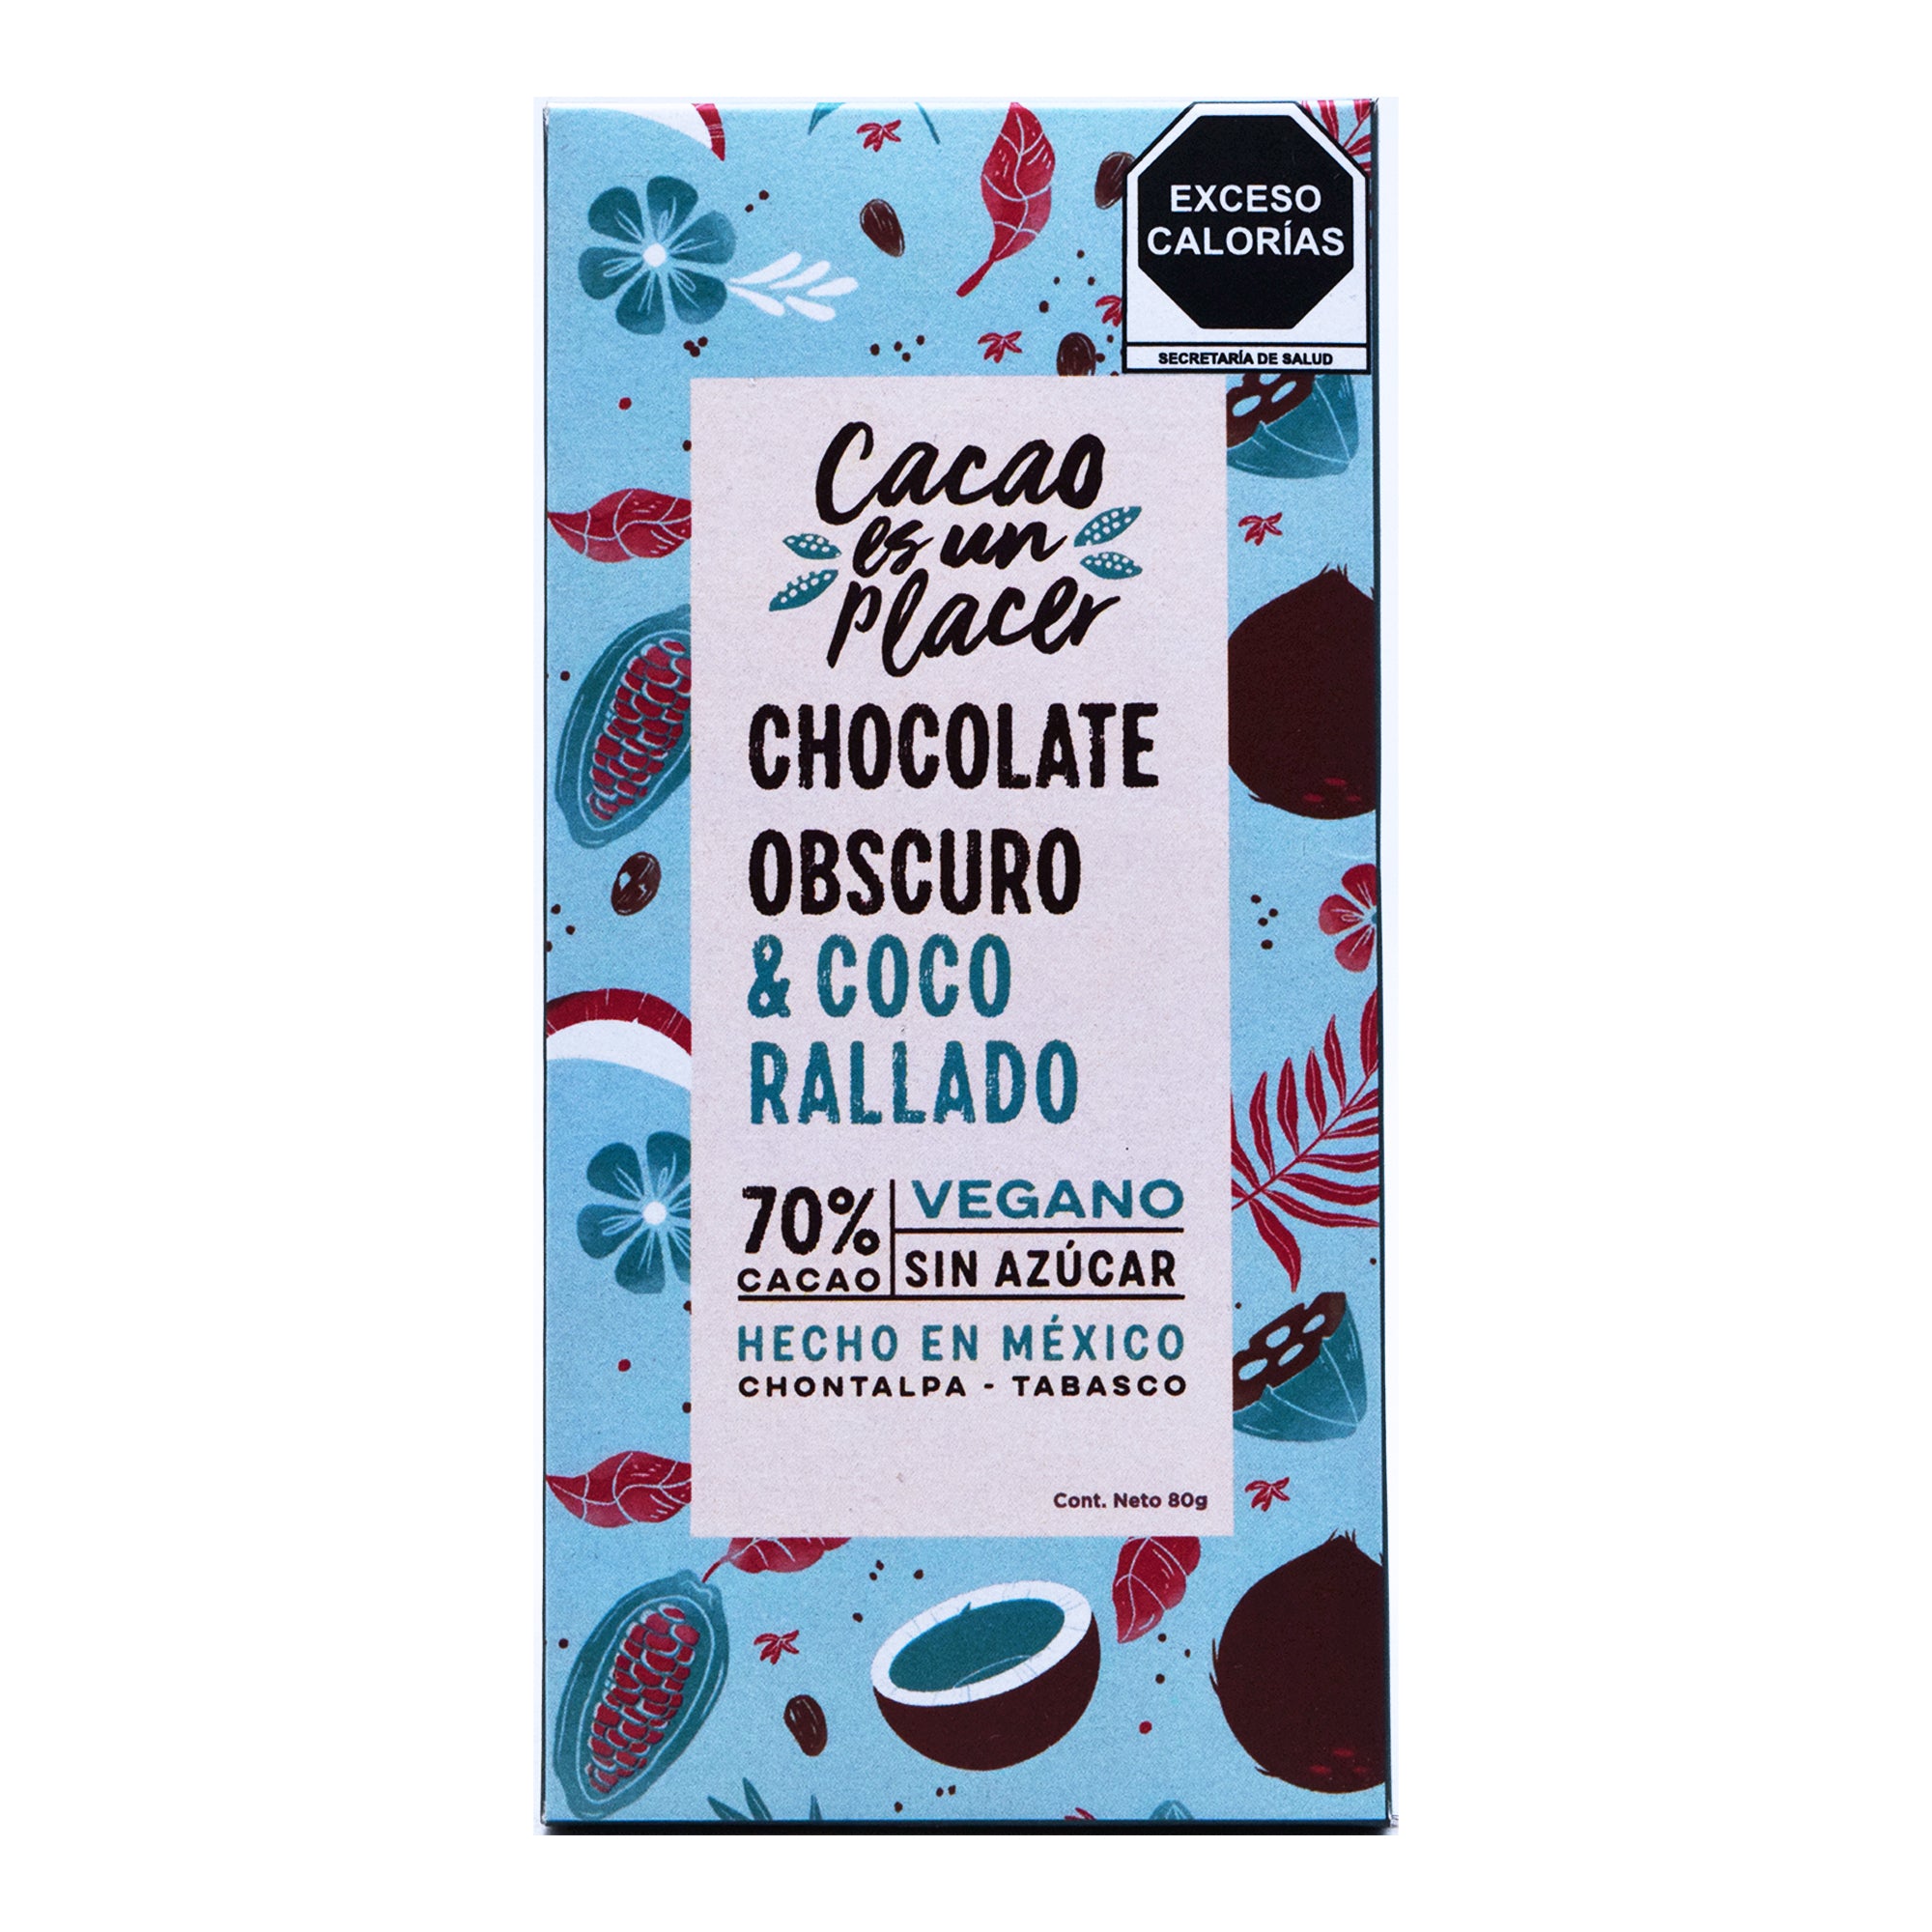 Chocolate obscuro con coco rallado 80 g